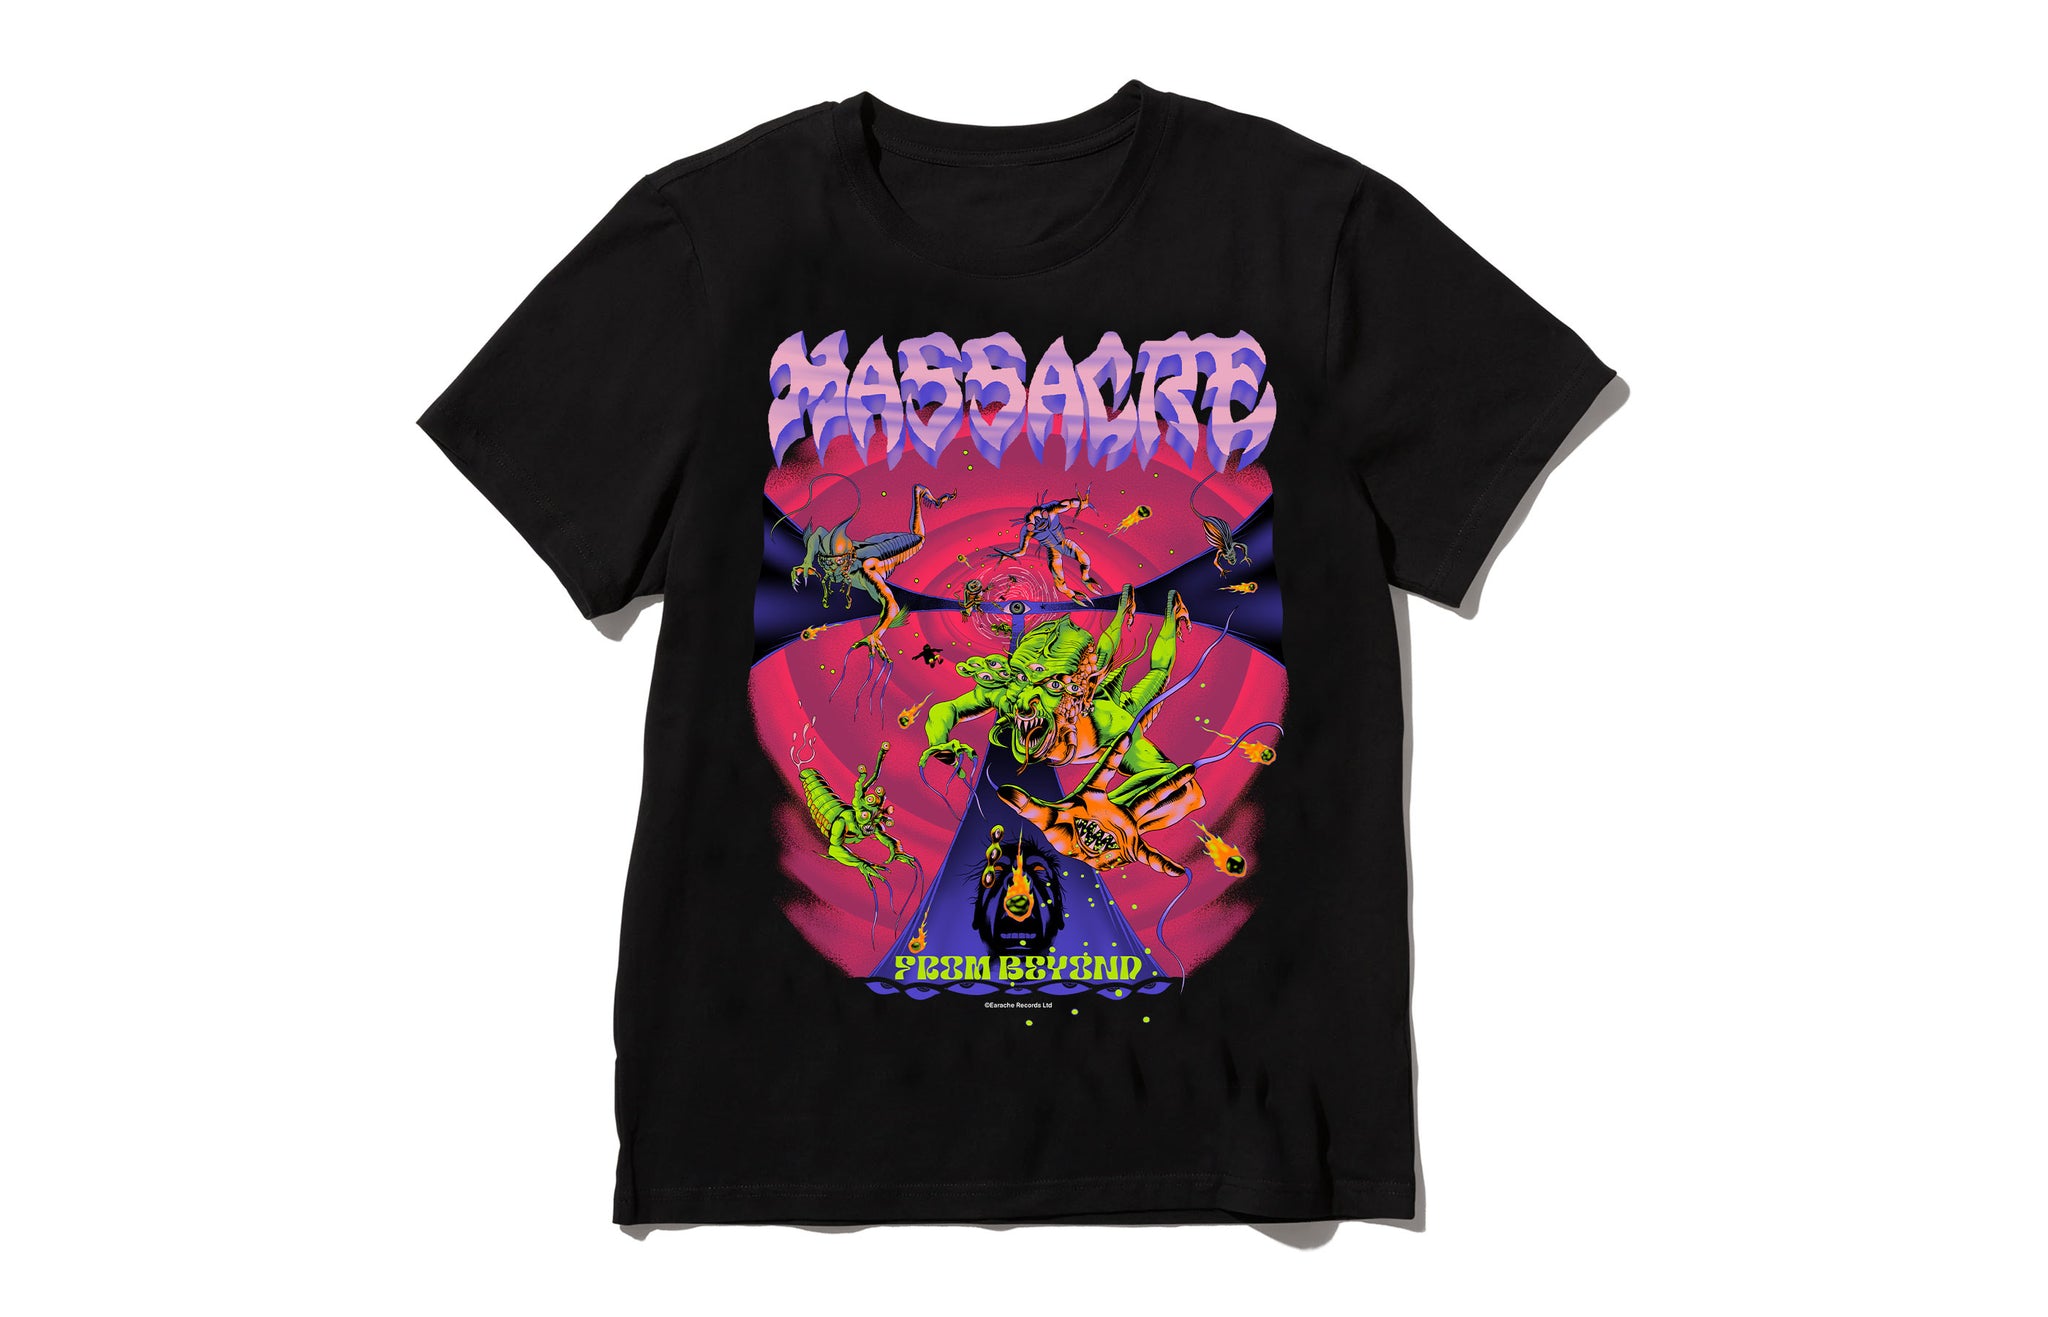 Massacre "From Beyond 2024 Ltd Edition" T-shirt